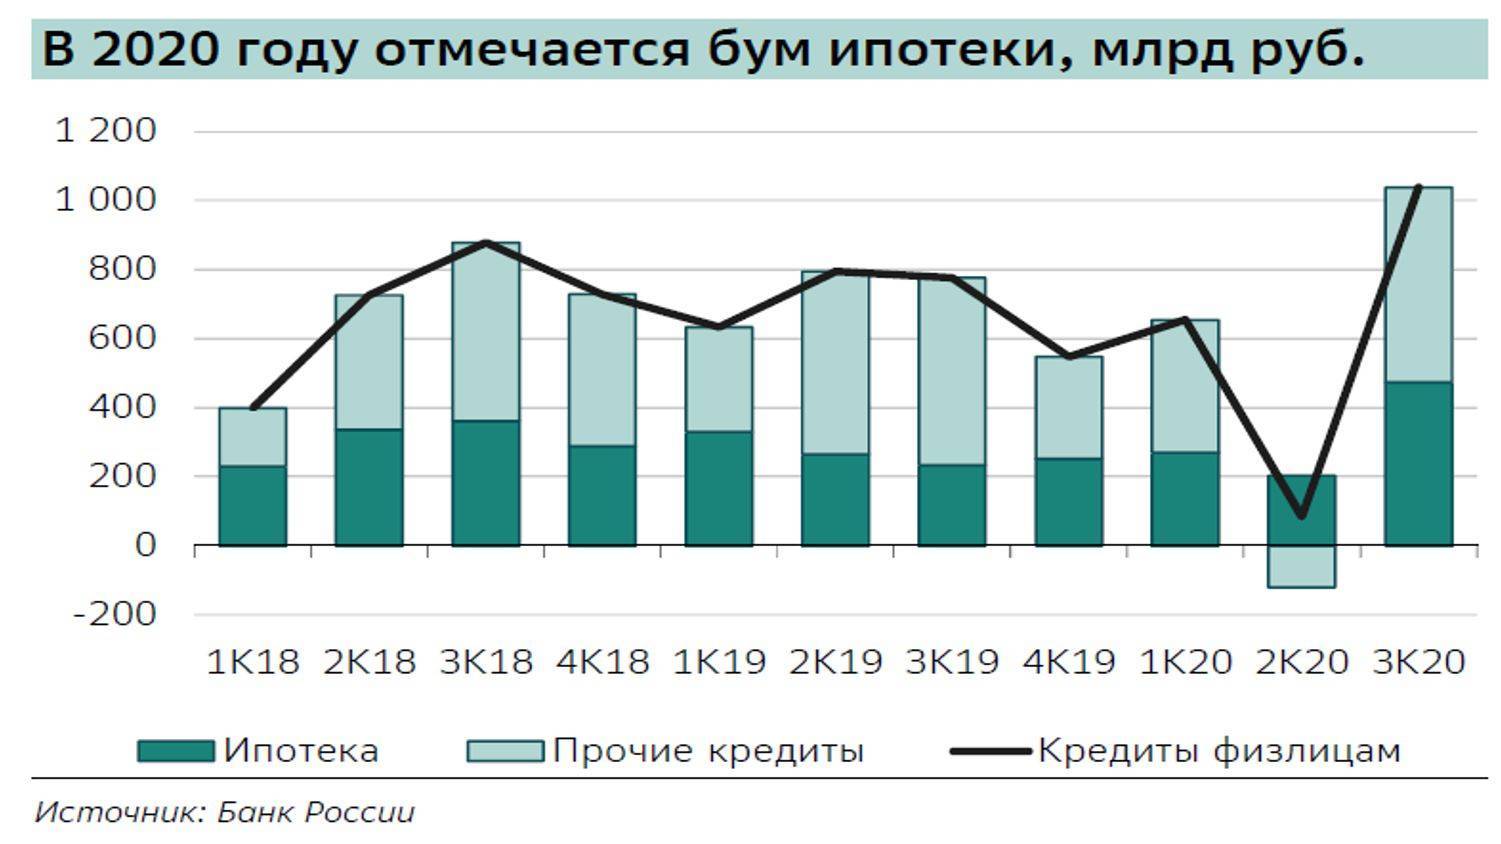 Итоги 1 квартала: цены на жилье выросли почти во всех регионах России